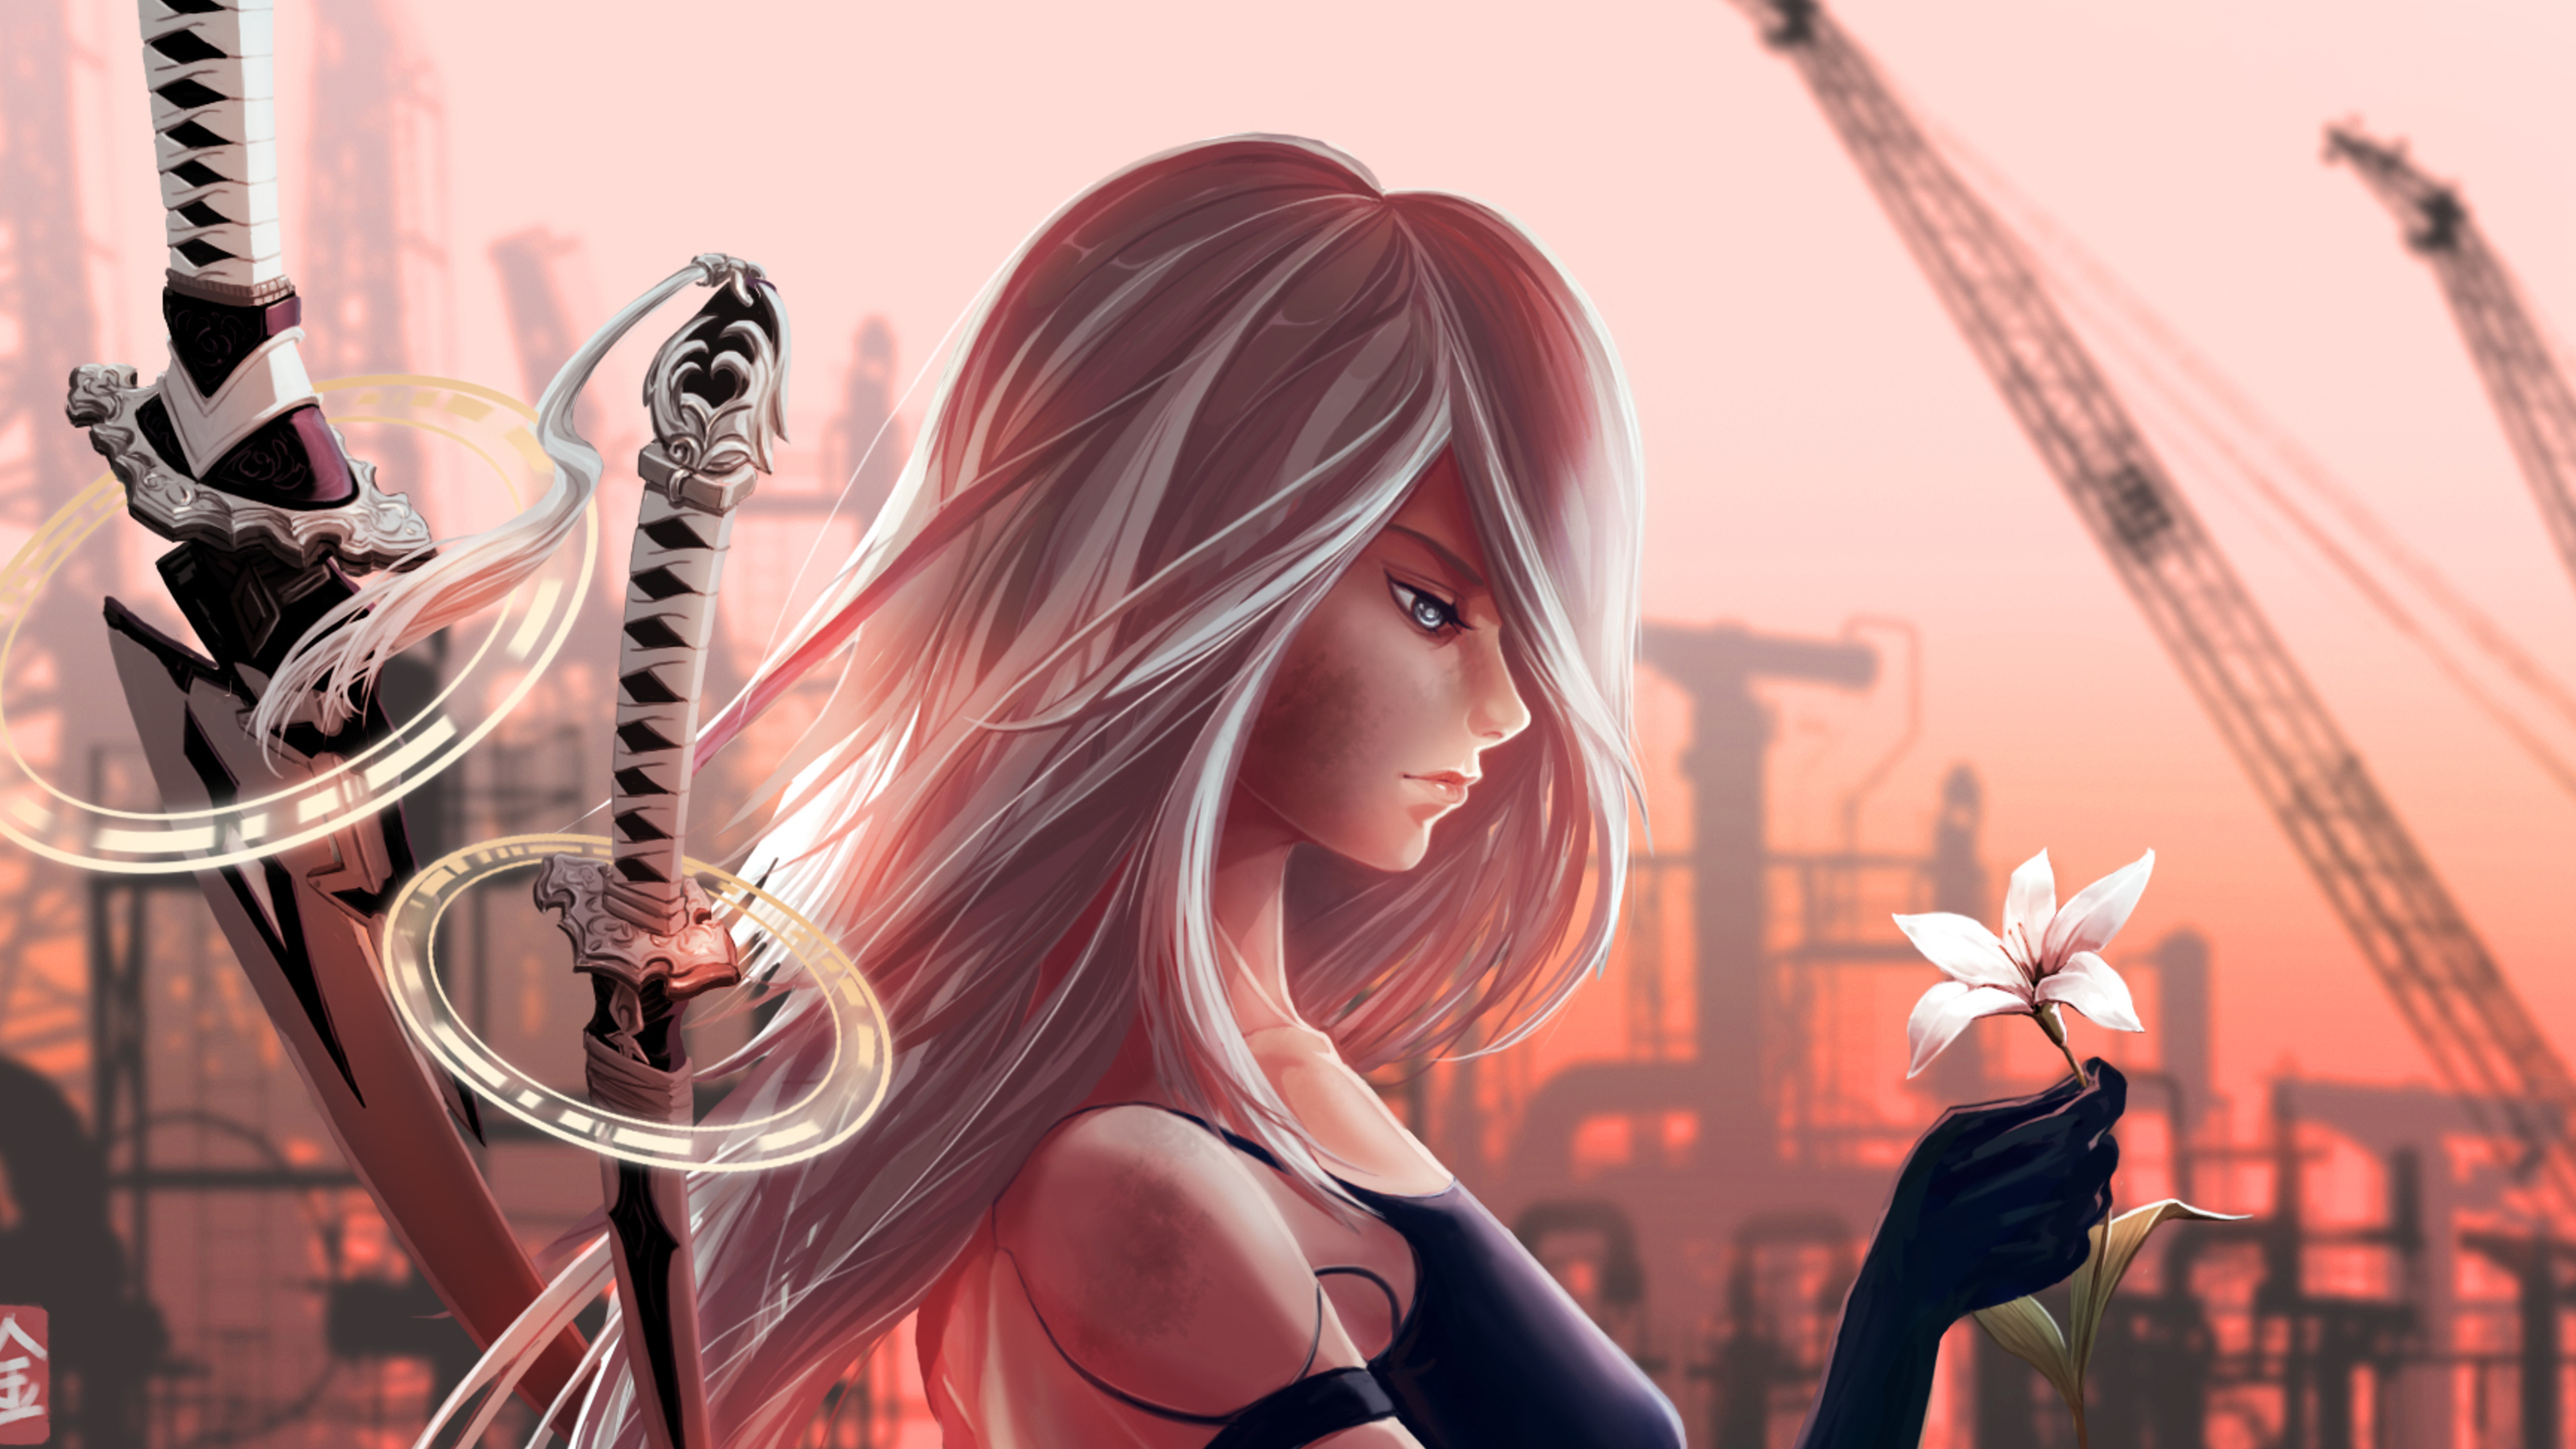 Femme en Soutien-gorge Noir Personnage Anime. Wallpaper in 3840x2160 Resolution